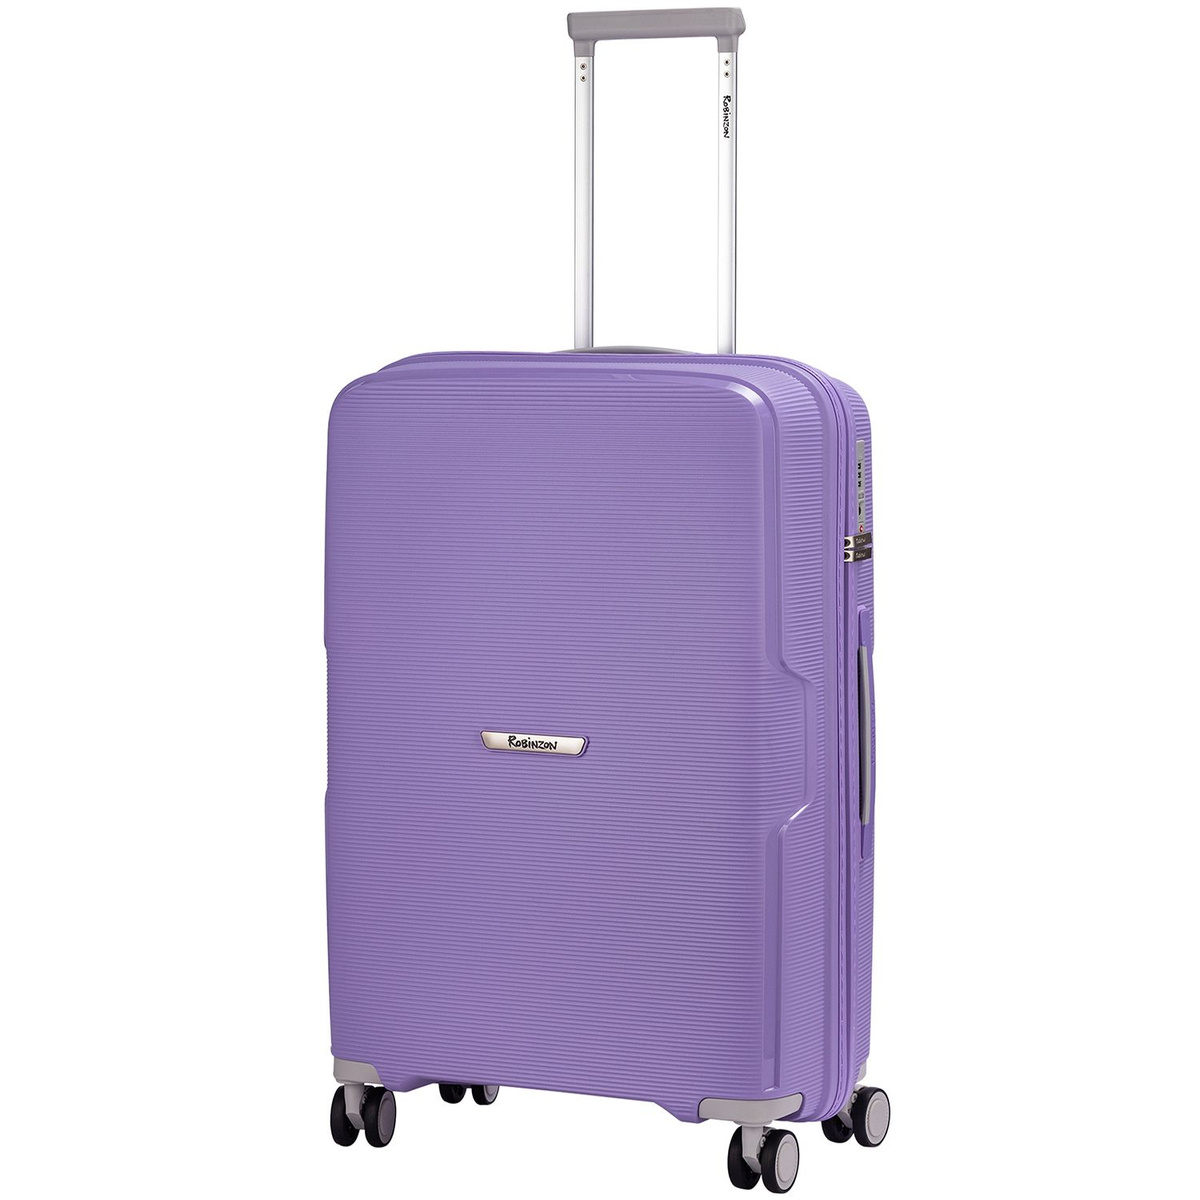 Размер чемодана: 46x67x26 см Вес чемодана: всего 3,1 кг Объём чемодана: 70 л